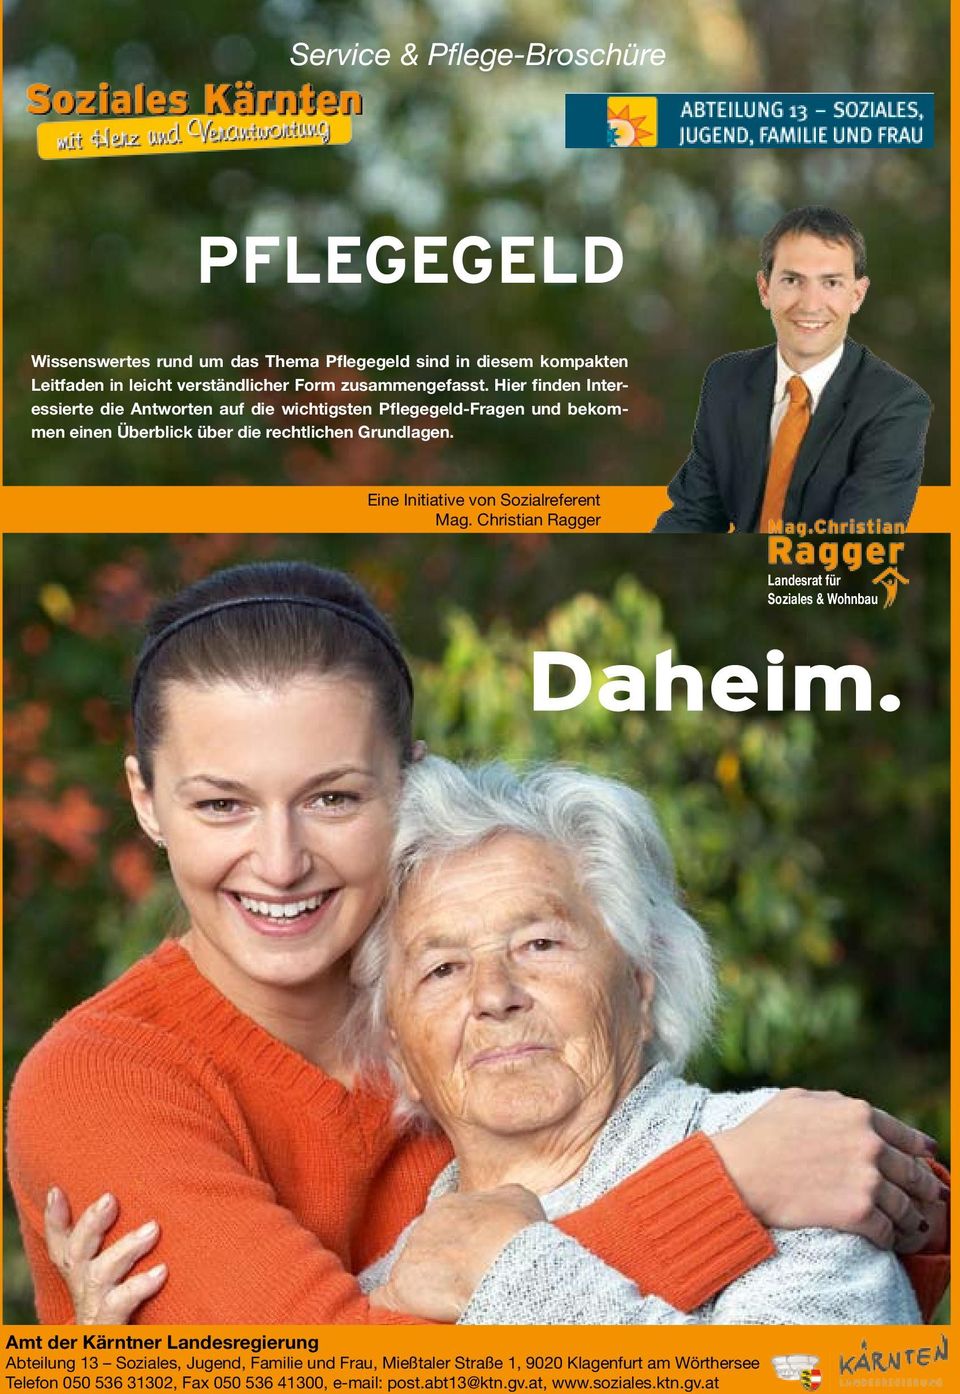 Eine Initiative von Sozialreferent Mag. Christian Ragger Landesrat für Soziales & Wohnbau Daheim.